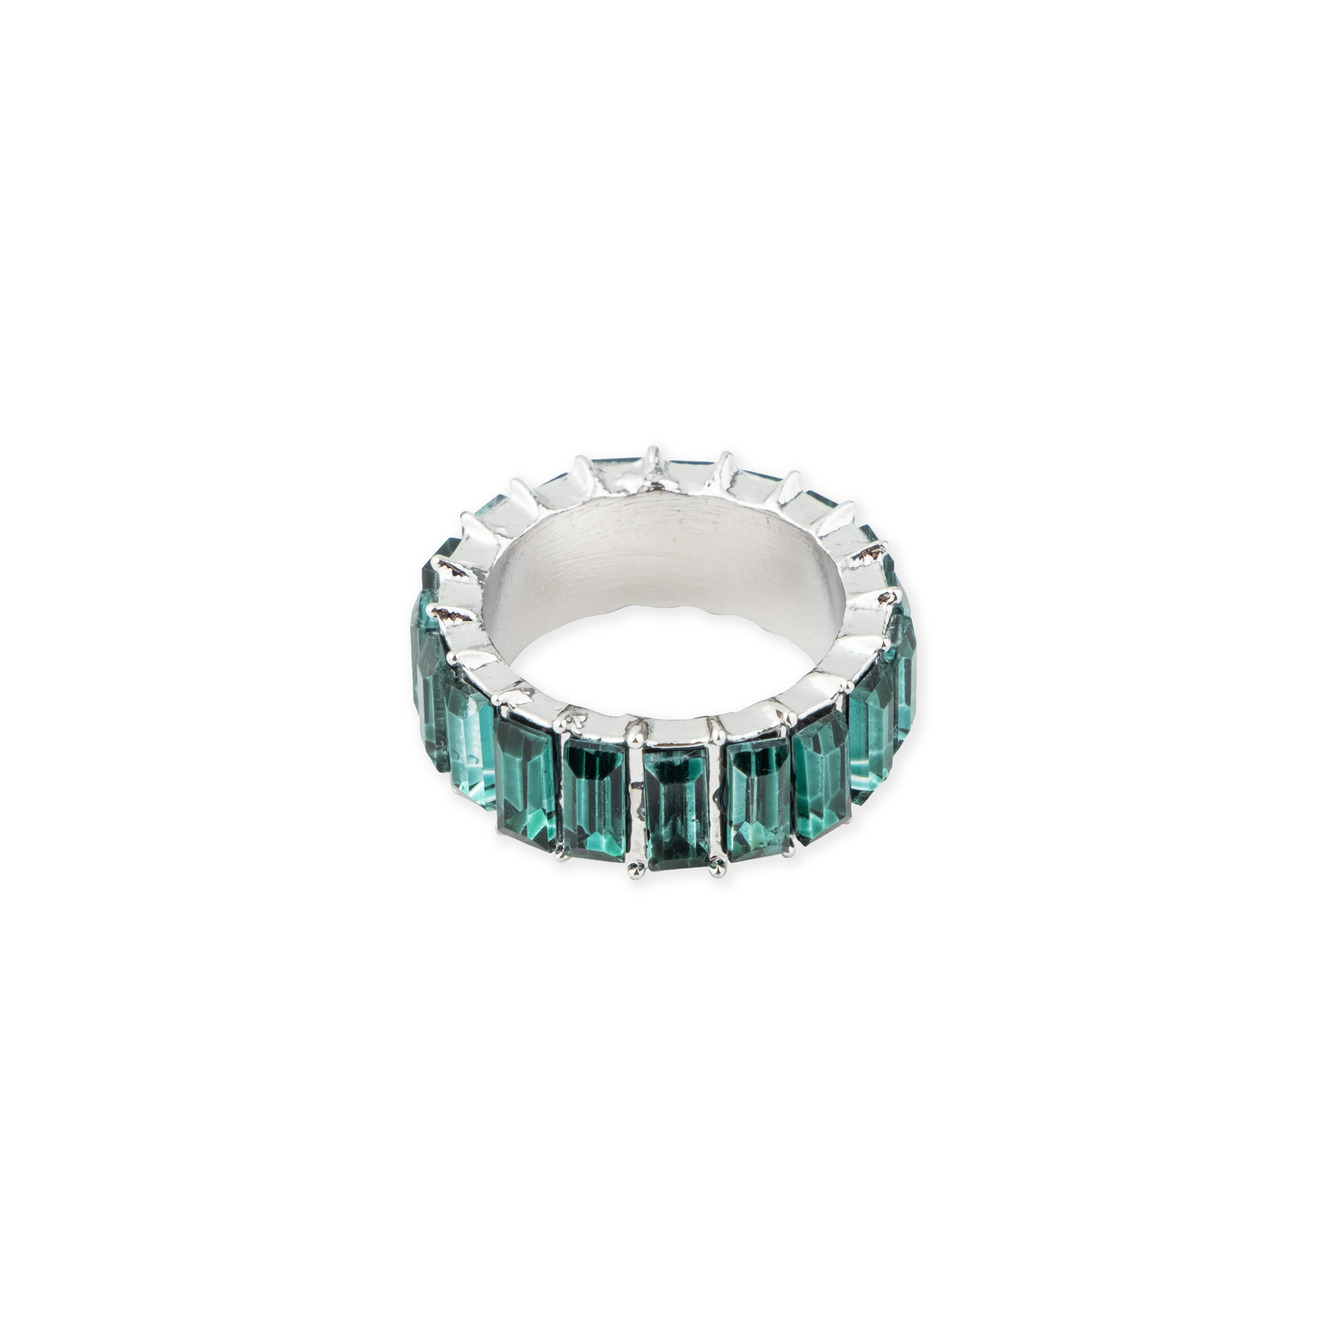 Herald Percy Серебристое кольцо с зелеными кристаллами herald percy серебристое кольцо из сердец с белыми и зелеными кристаллами